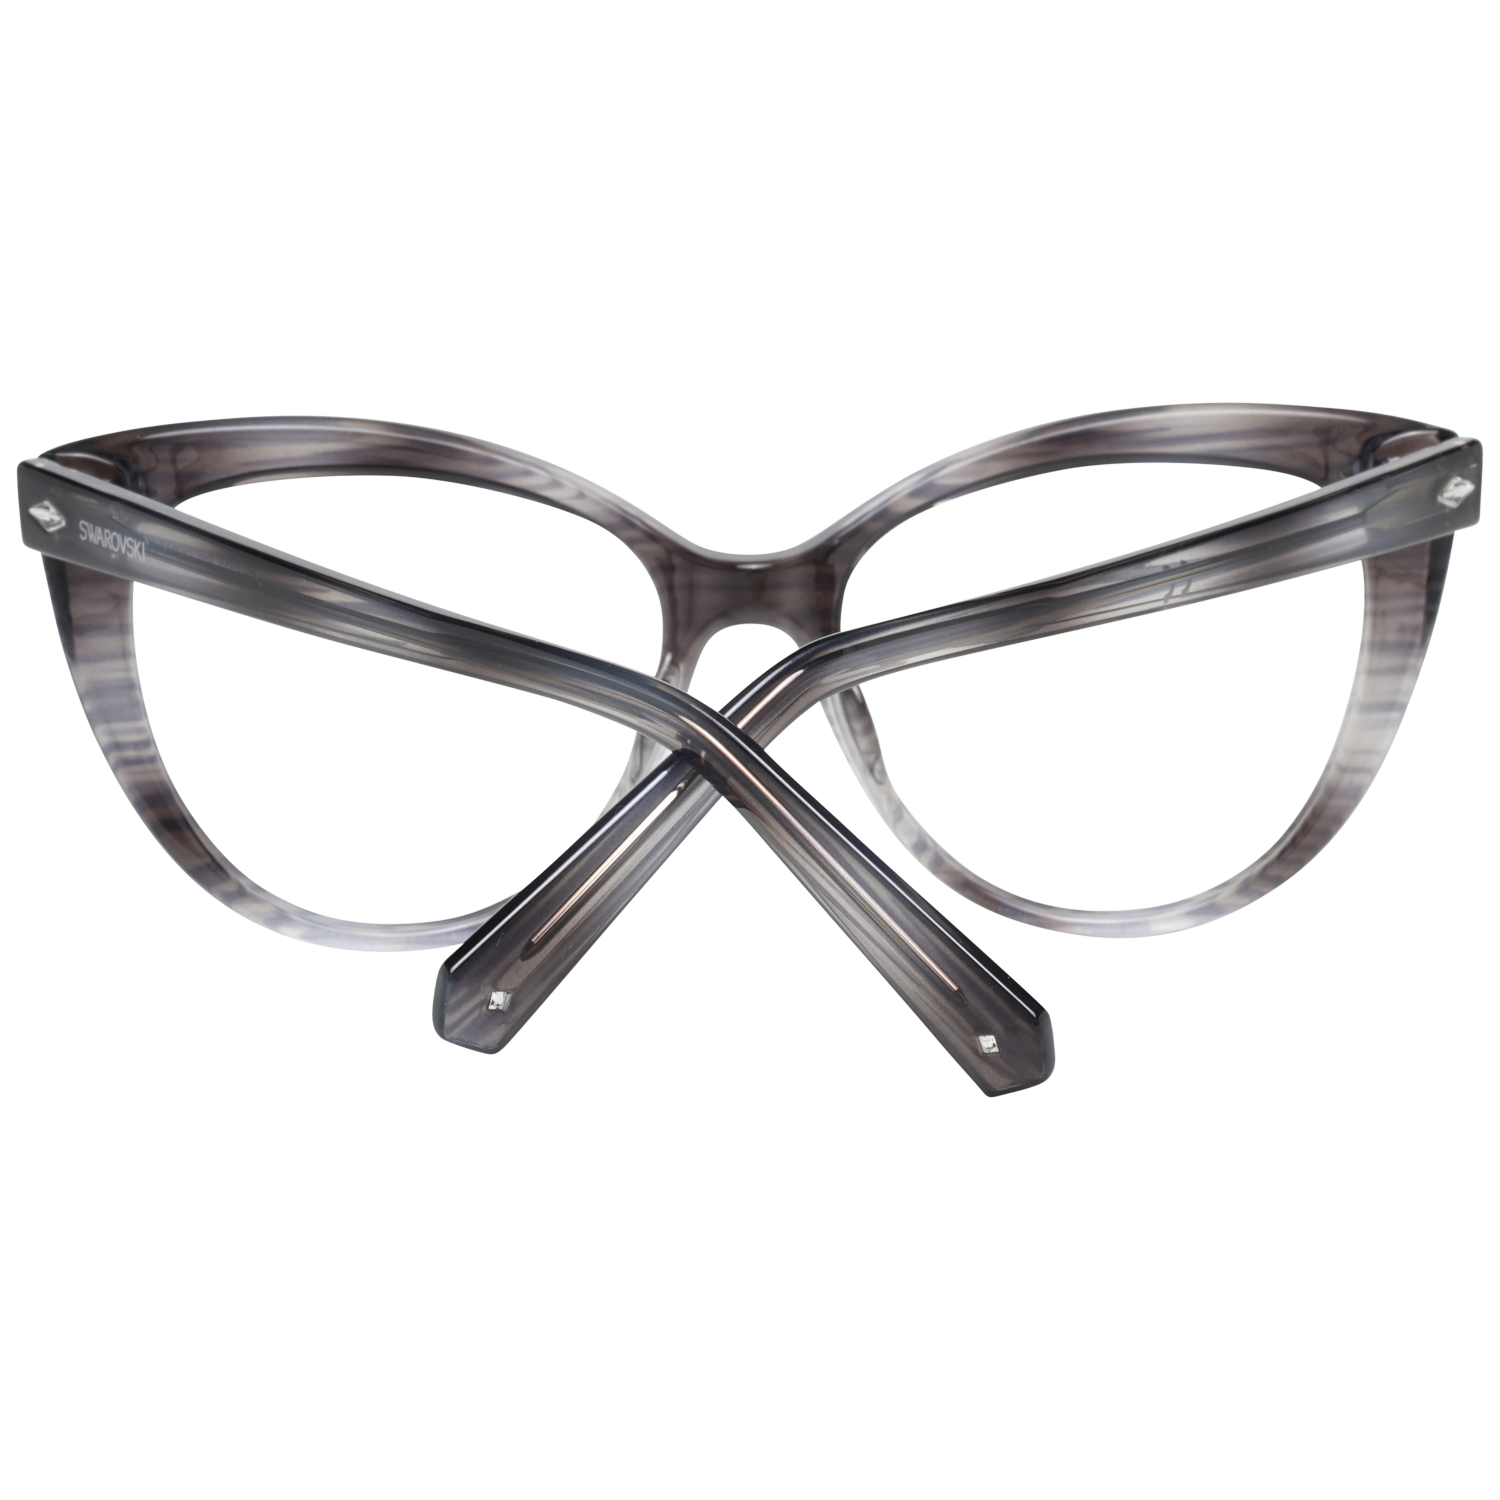 Swarovski Frames Swarovski Women Glasses Optical Frame SK5270 020 53 Eyeglasses Eyewear UK USA Australia 